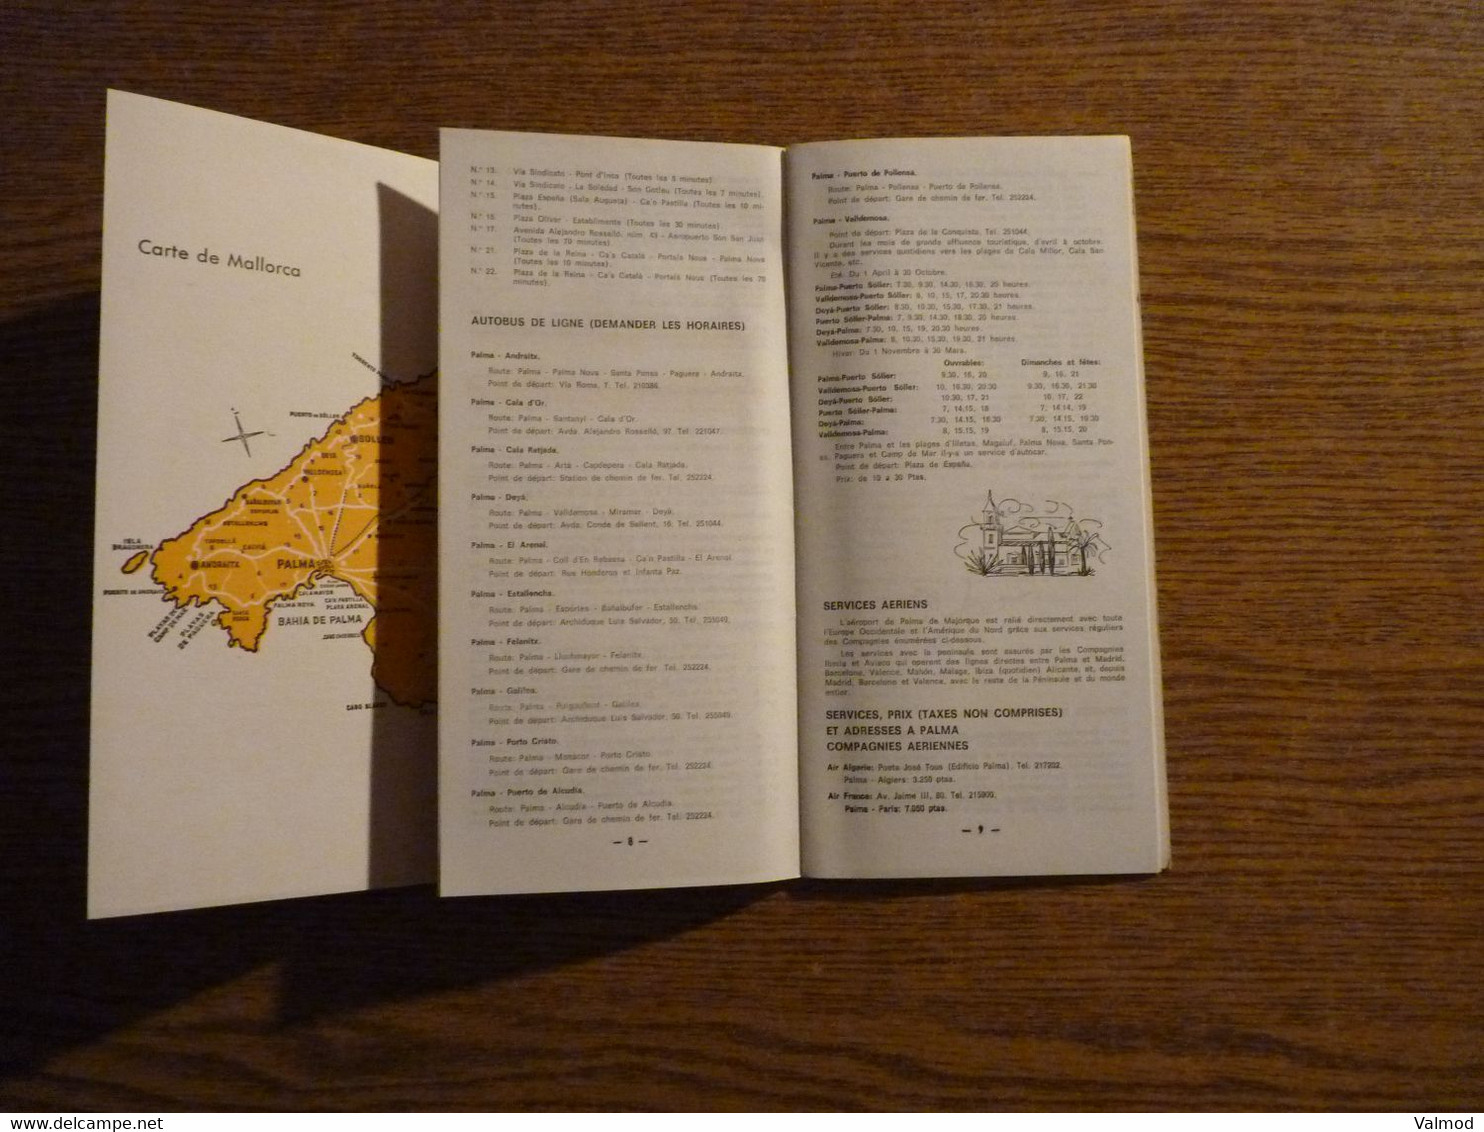 Mallorca - Espagne - Livret/Dépliant Touristique ancien 24 Pages + Dépliant 3 Volets - Format plié 11,5 x 24 cm environ.